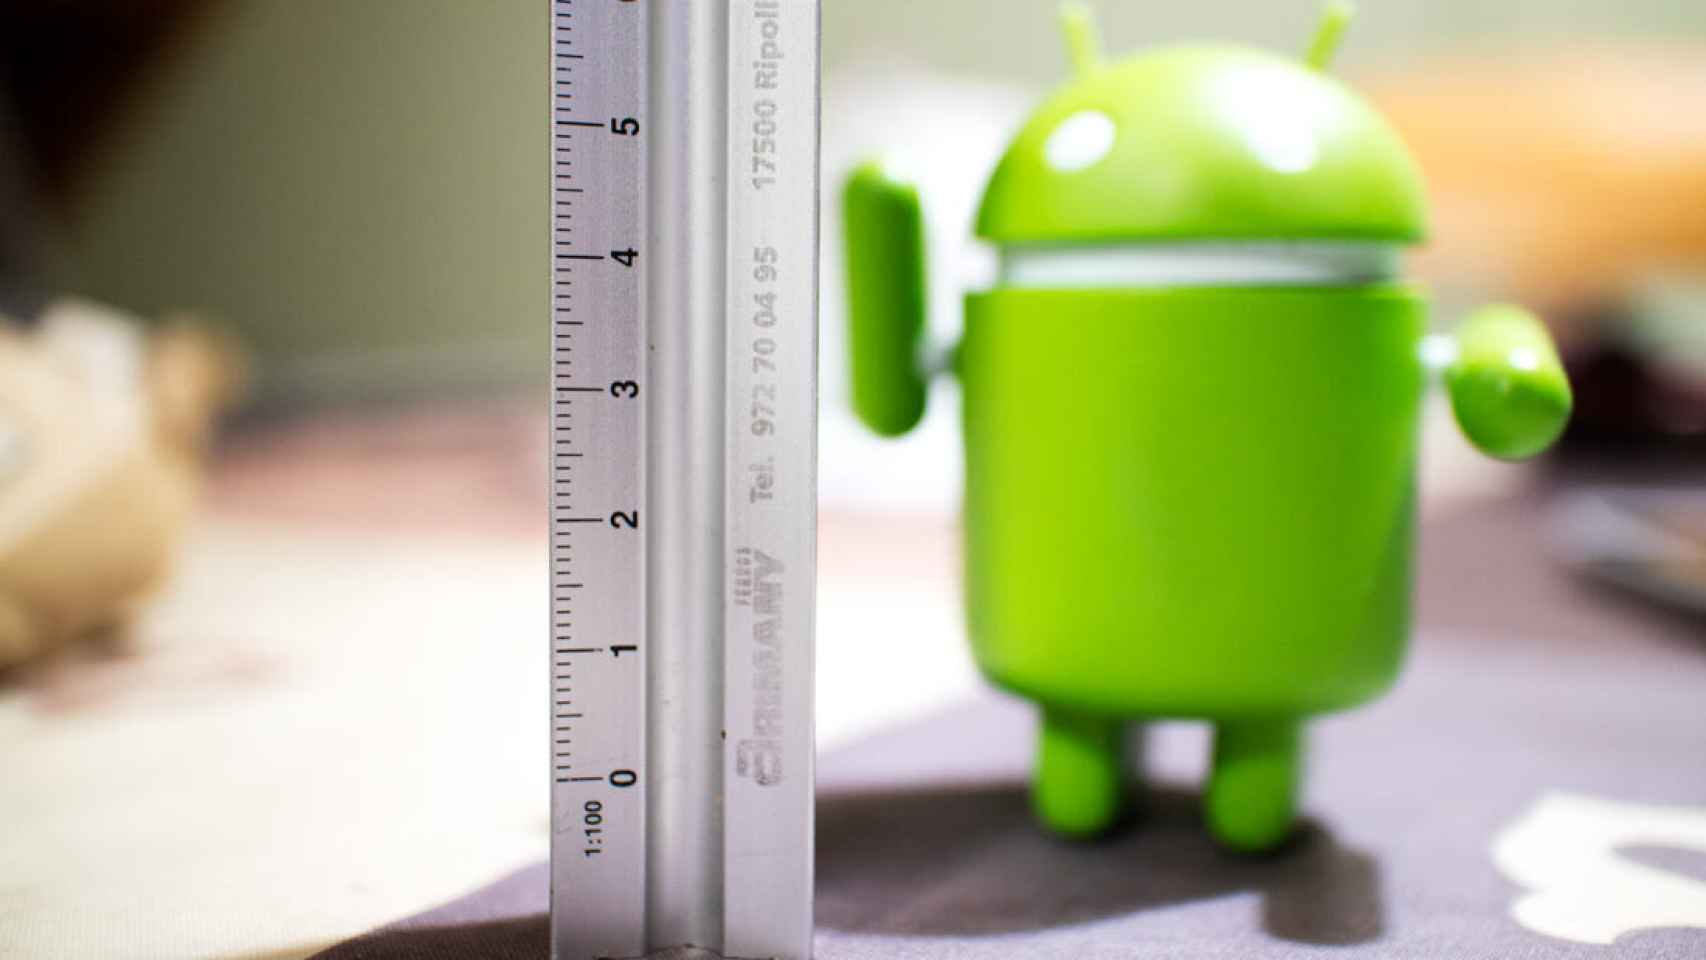 La odisea de Android para convertir cualquier cosa en inteligente